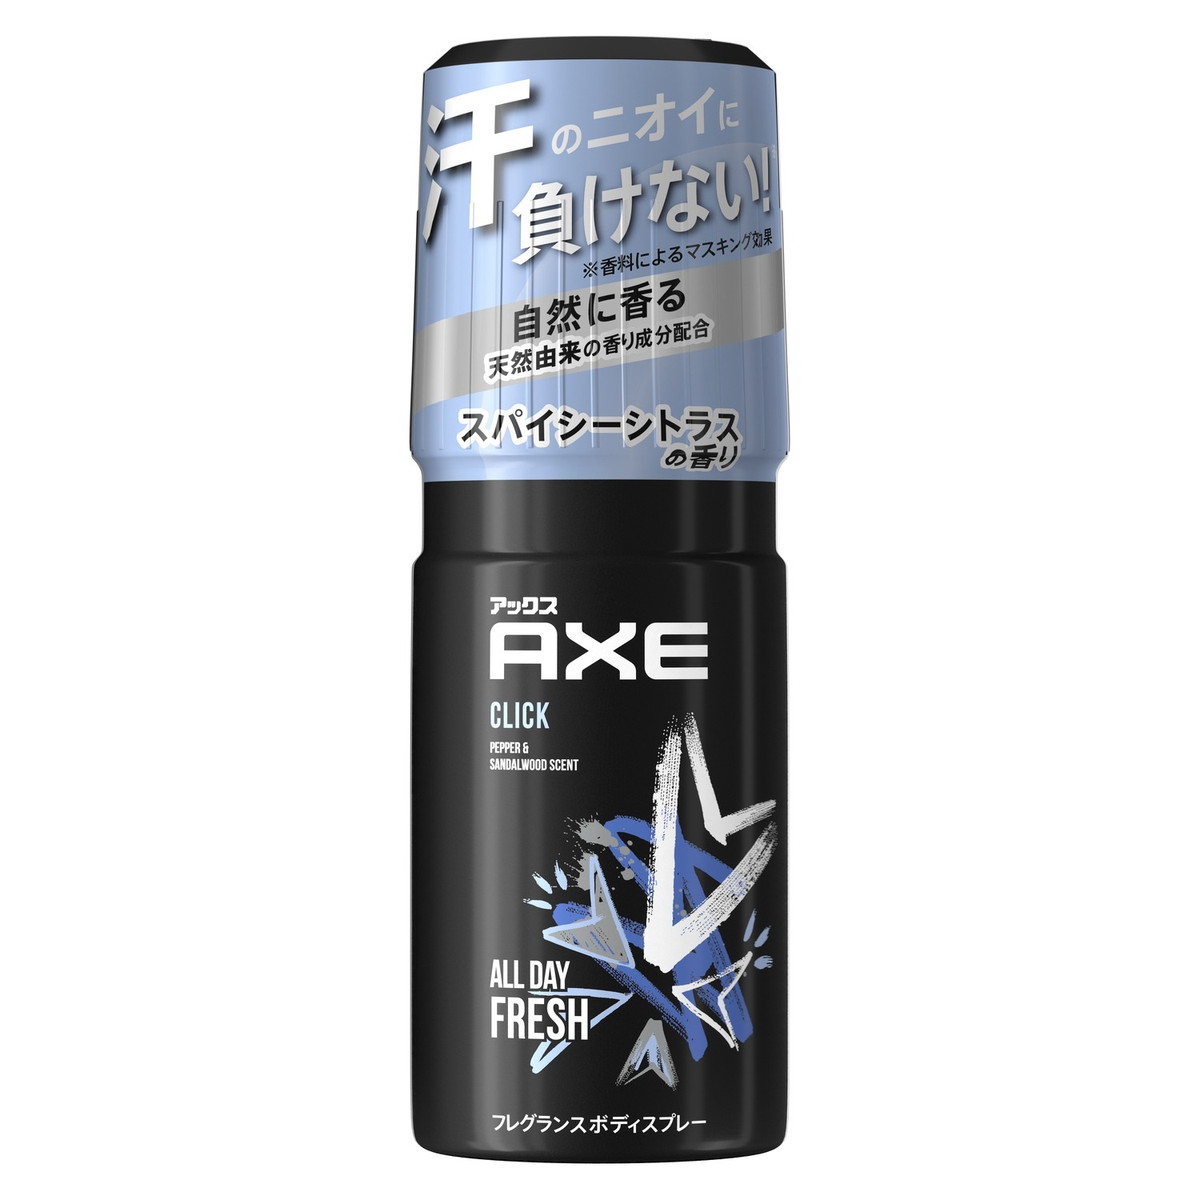 アックス 【×5個セット 送料込】ユニリーバ AXE アックス フレグランス ボディスプレー クリック 60g